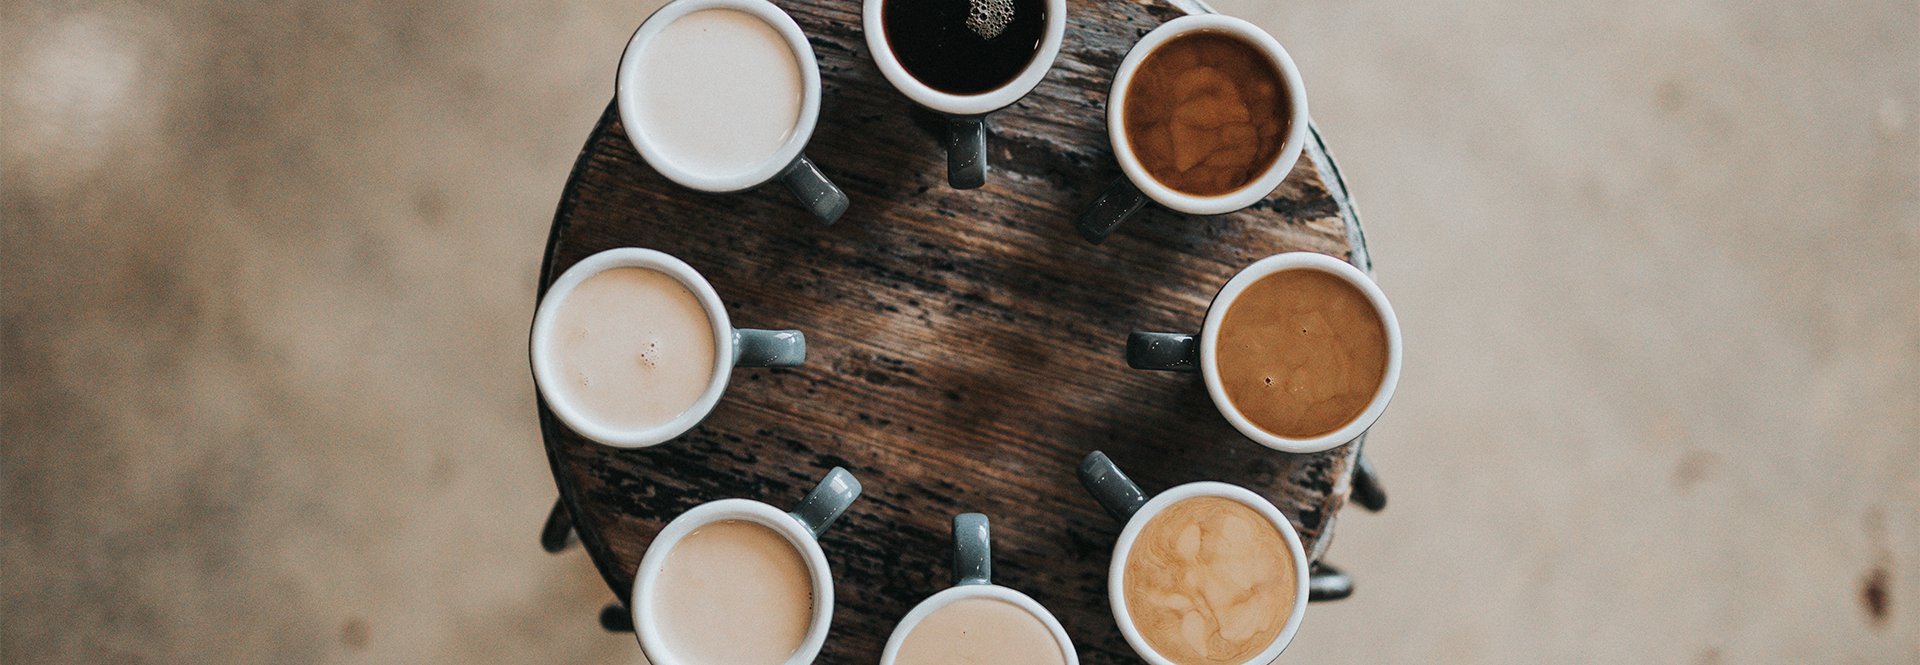 Najlepsze kawy do biura - 4 wiodące marki w Coffee Partner